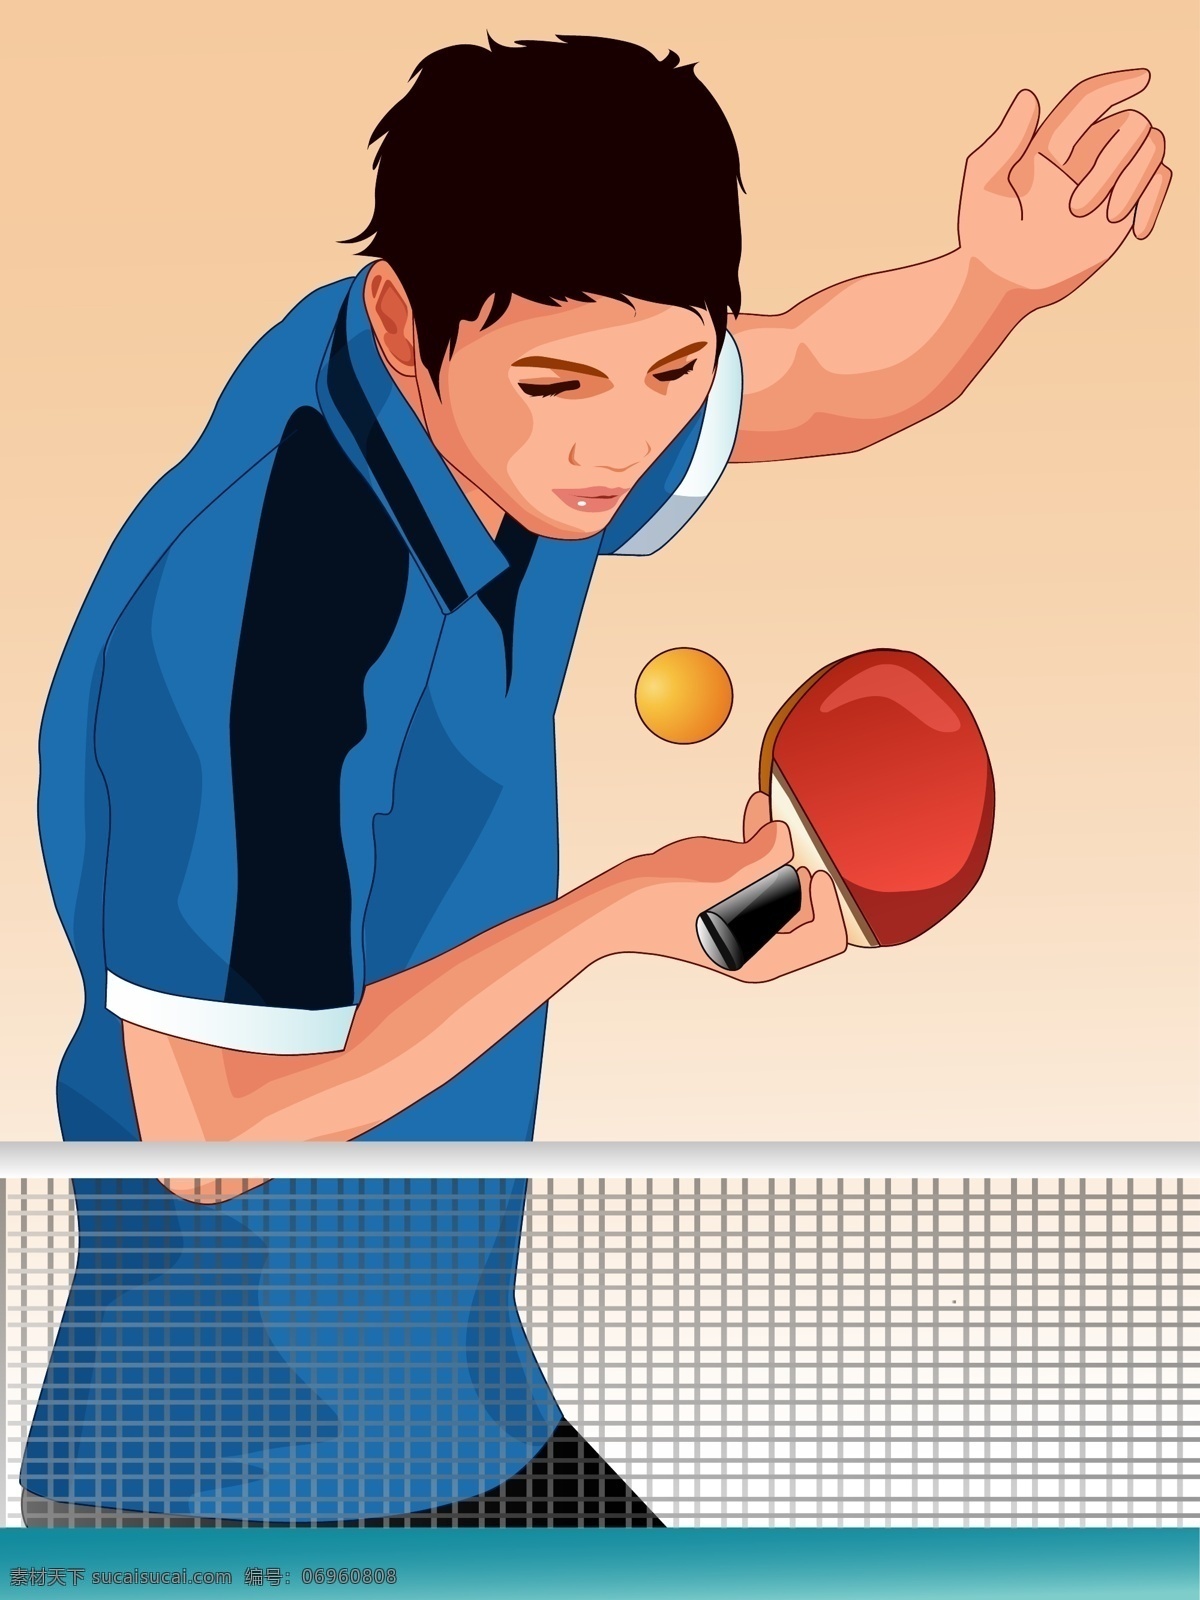 乒乓球 比赛 人物 乒乓球比赛 乒乓球网 乒乓球桌 乒乓球拍 奥运会 适量人物 适量 体育运动 文化艺术 矢量